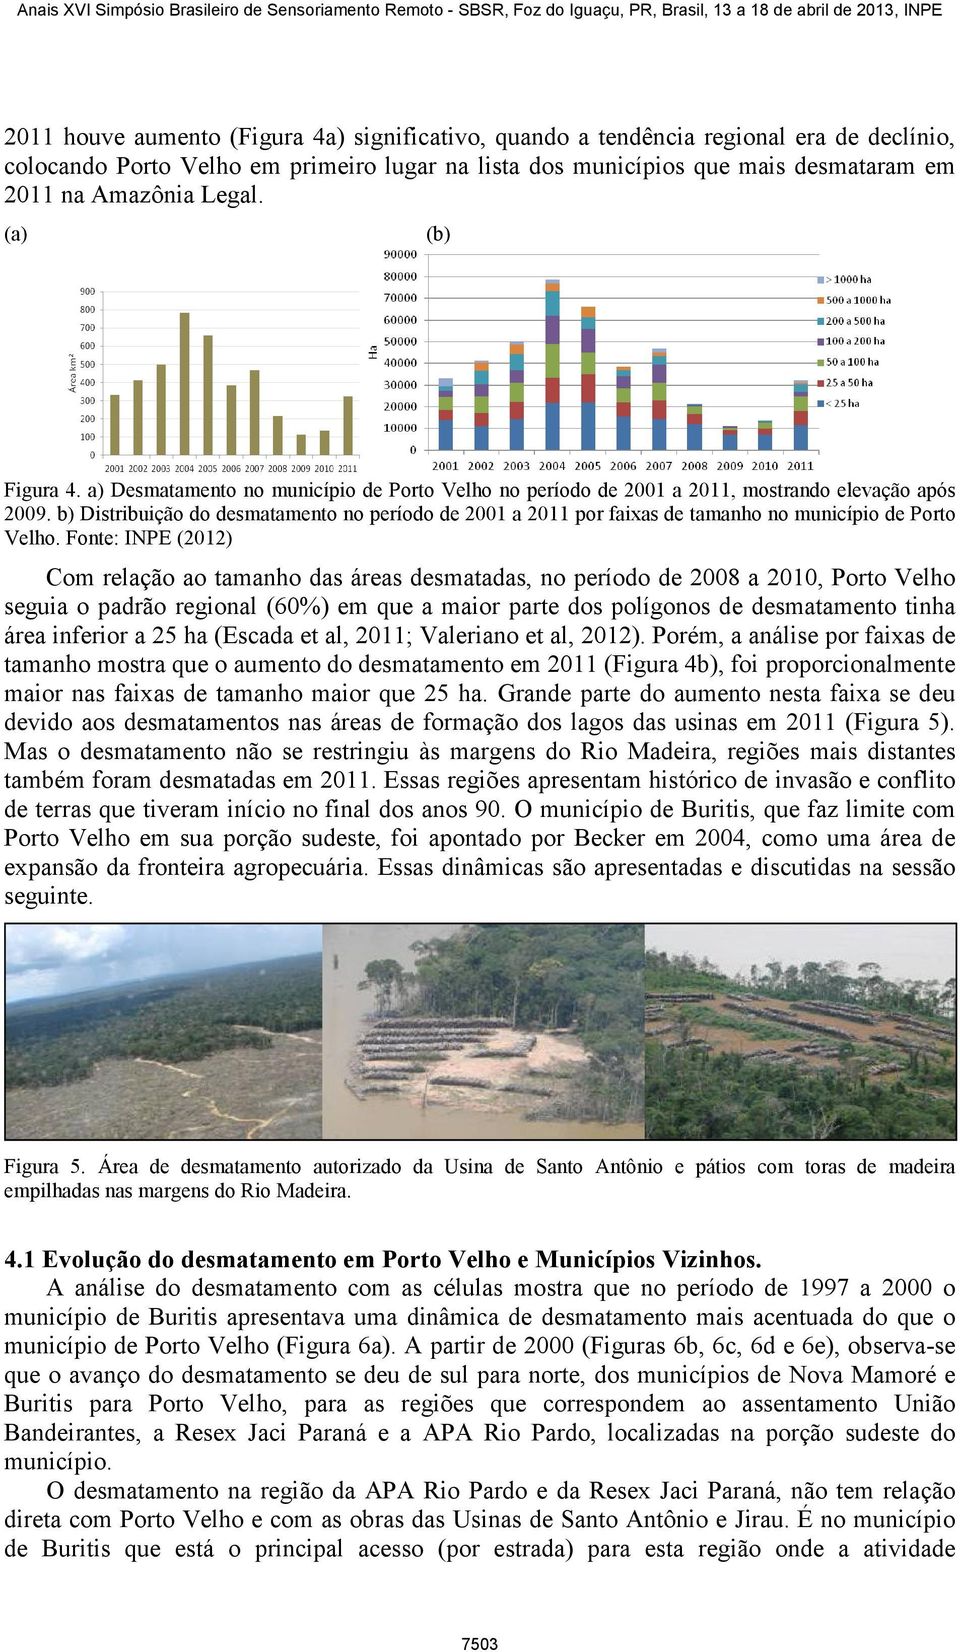 b) Distribuição do desmatamento no período de 2001 a 2011 por faixas de tamanho no município de Porto Velho.